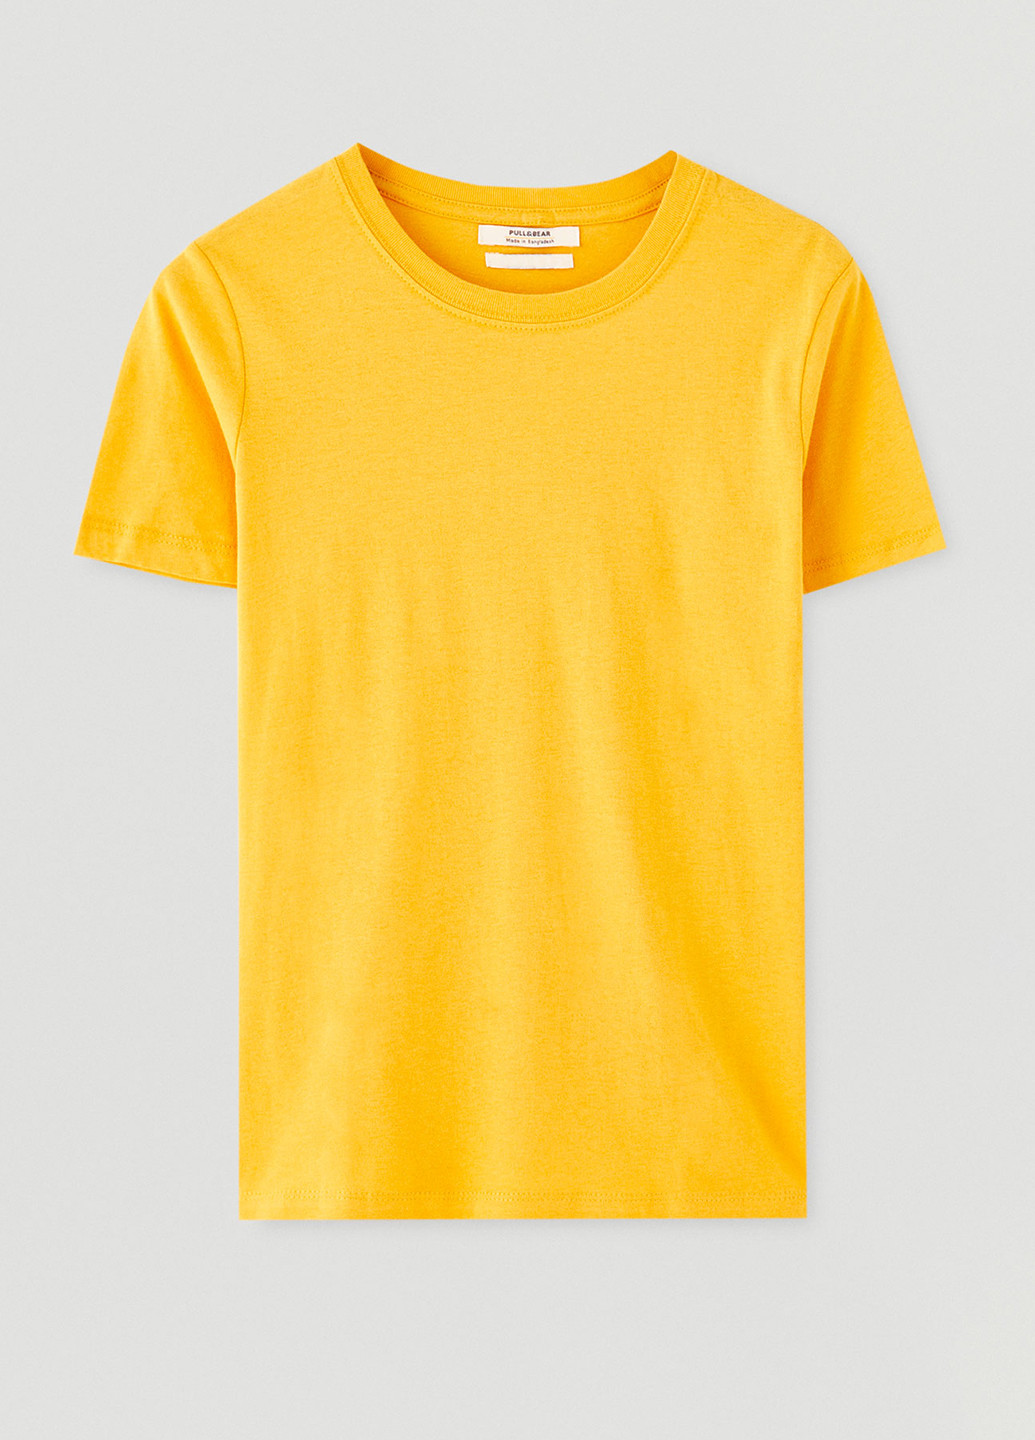 Жовта літня футболка Pull & Bear